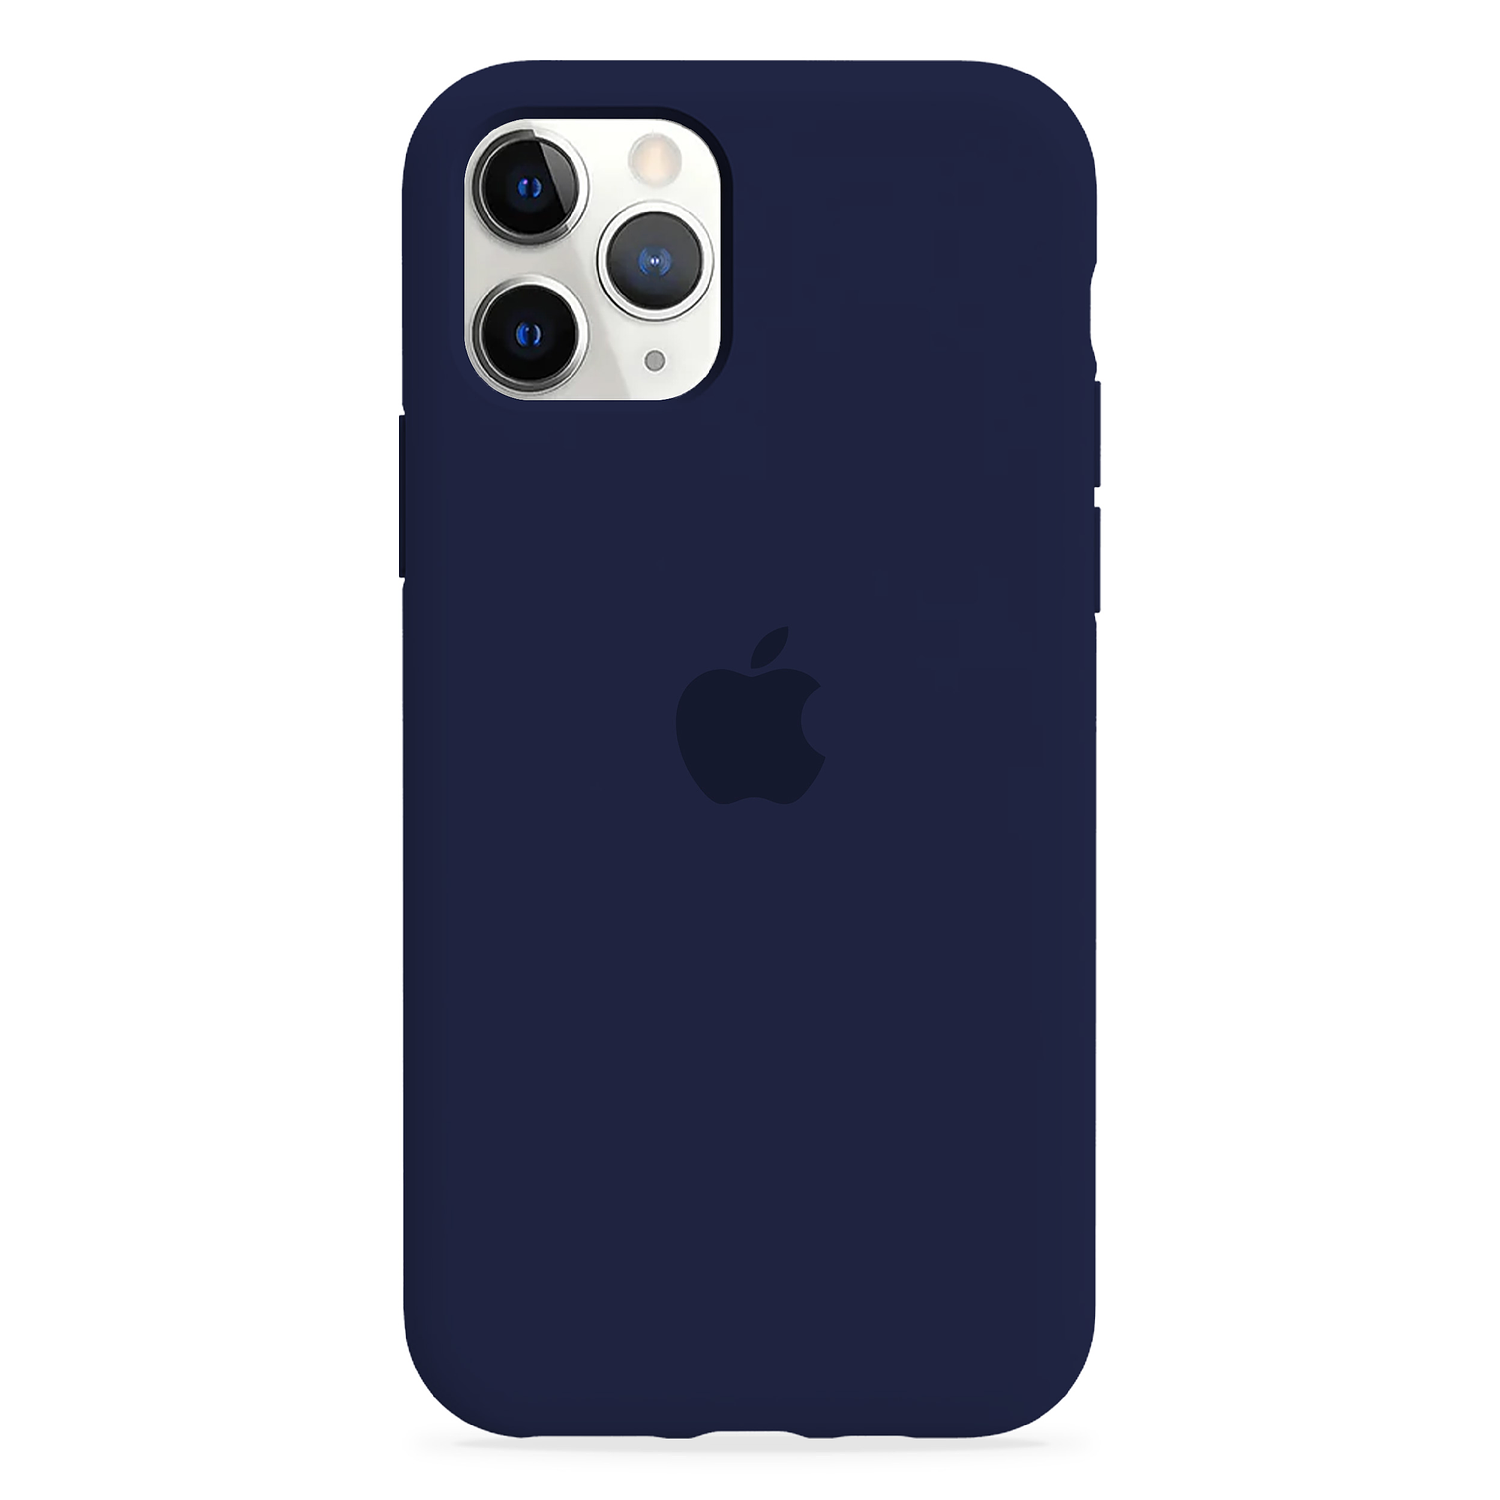 Carcasa de Silicona - iPhone 11 Pro 13